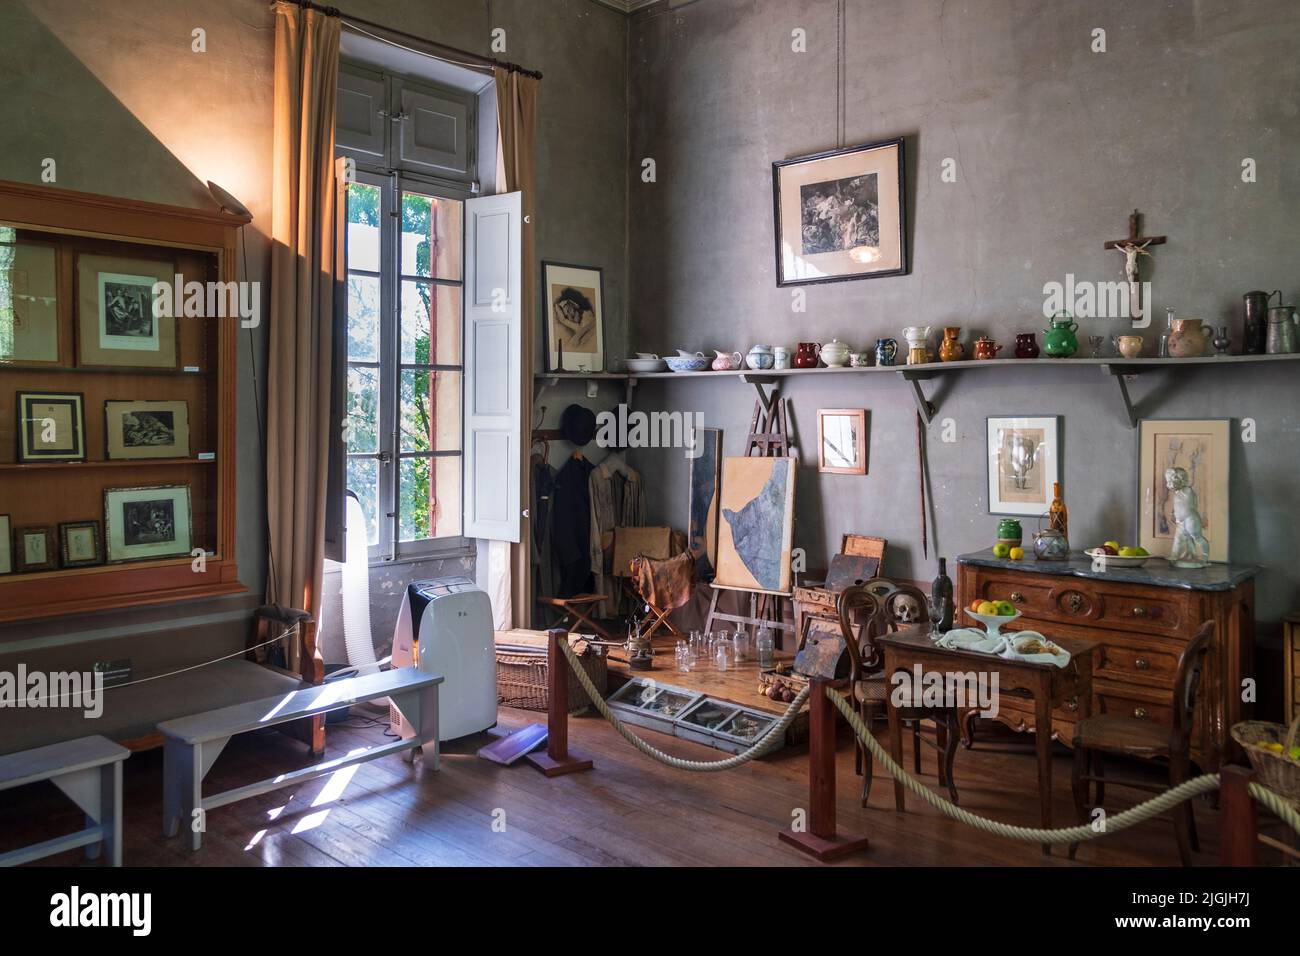 Atelier de Cezanne - estudio de arte interior, Aix-en-Provence, Francia Foto de stock